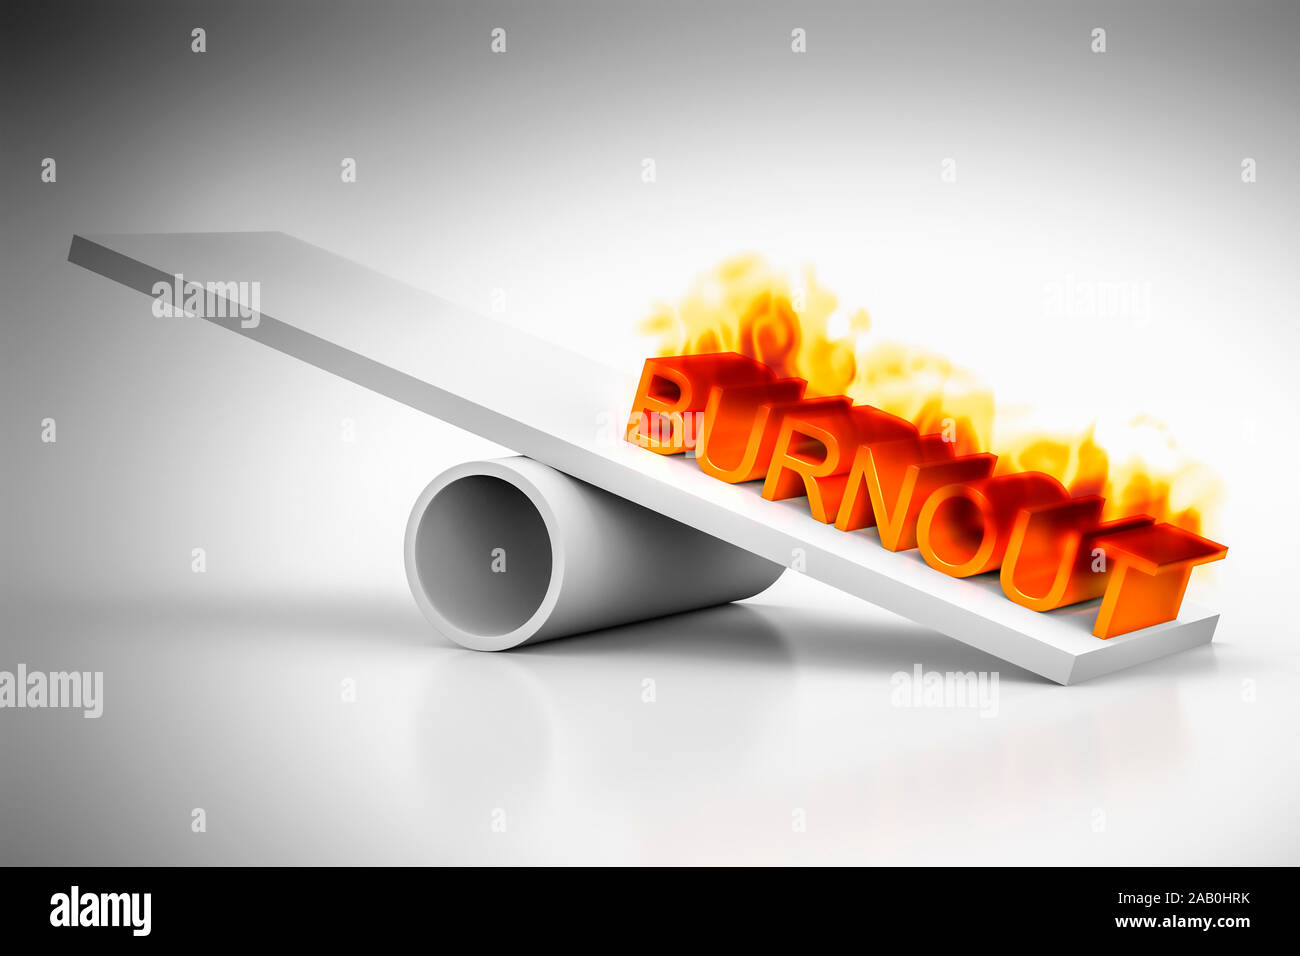 Eine Wippe vor weissem Hintergrund mit dem brennenden Wort "Burnout' Foto Stock